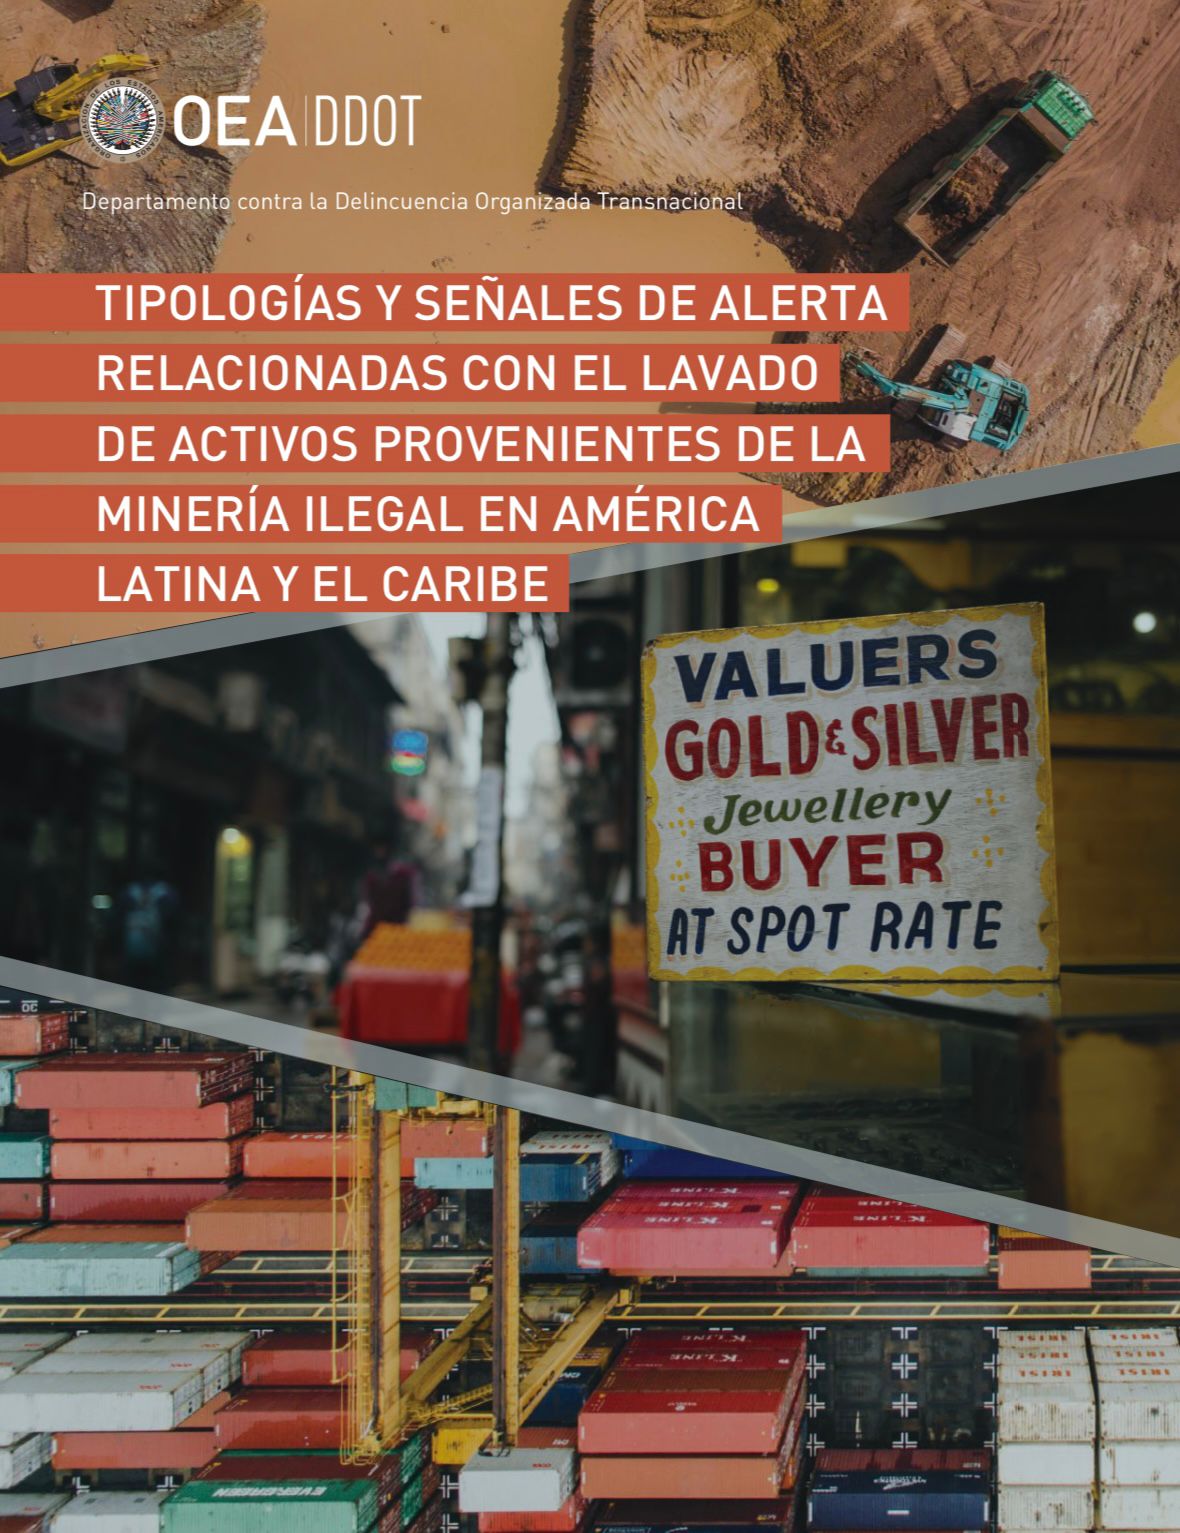 La OEA-DDOTE presenta documento sobre el lavado de activos provenientes de la Minería Ilegal en América Latina y el Caribe